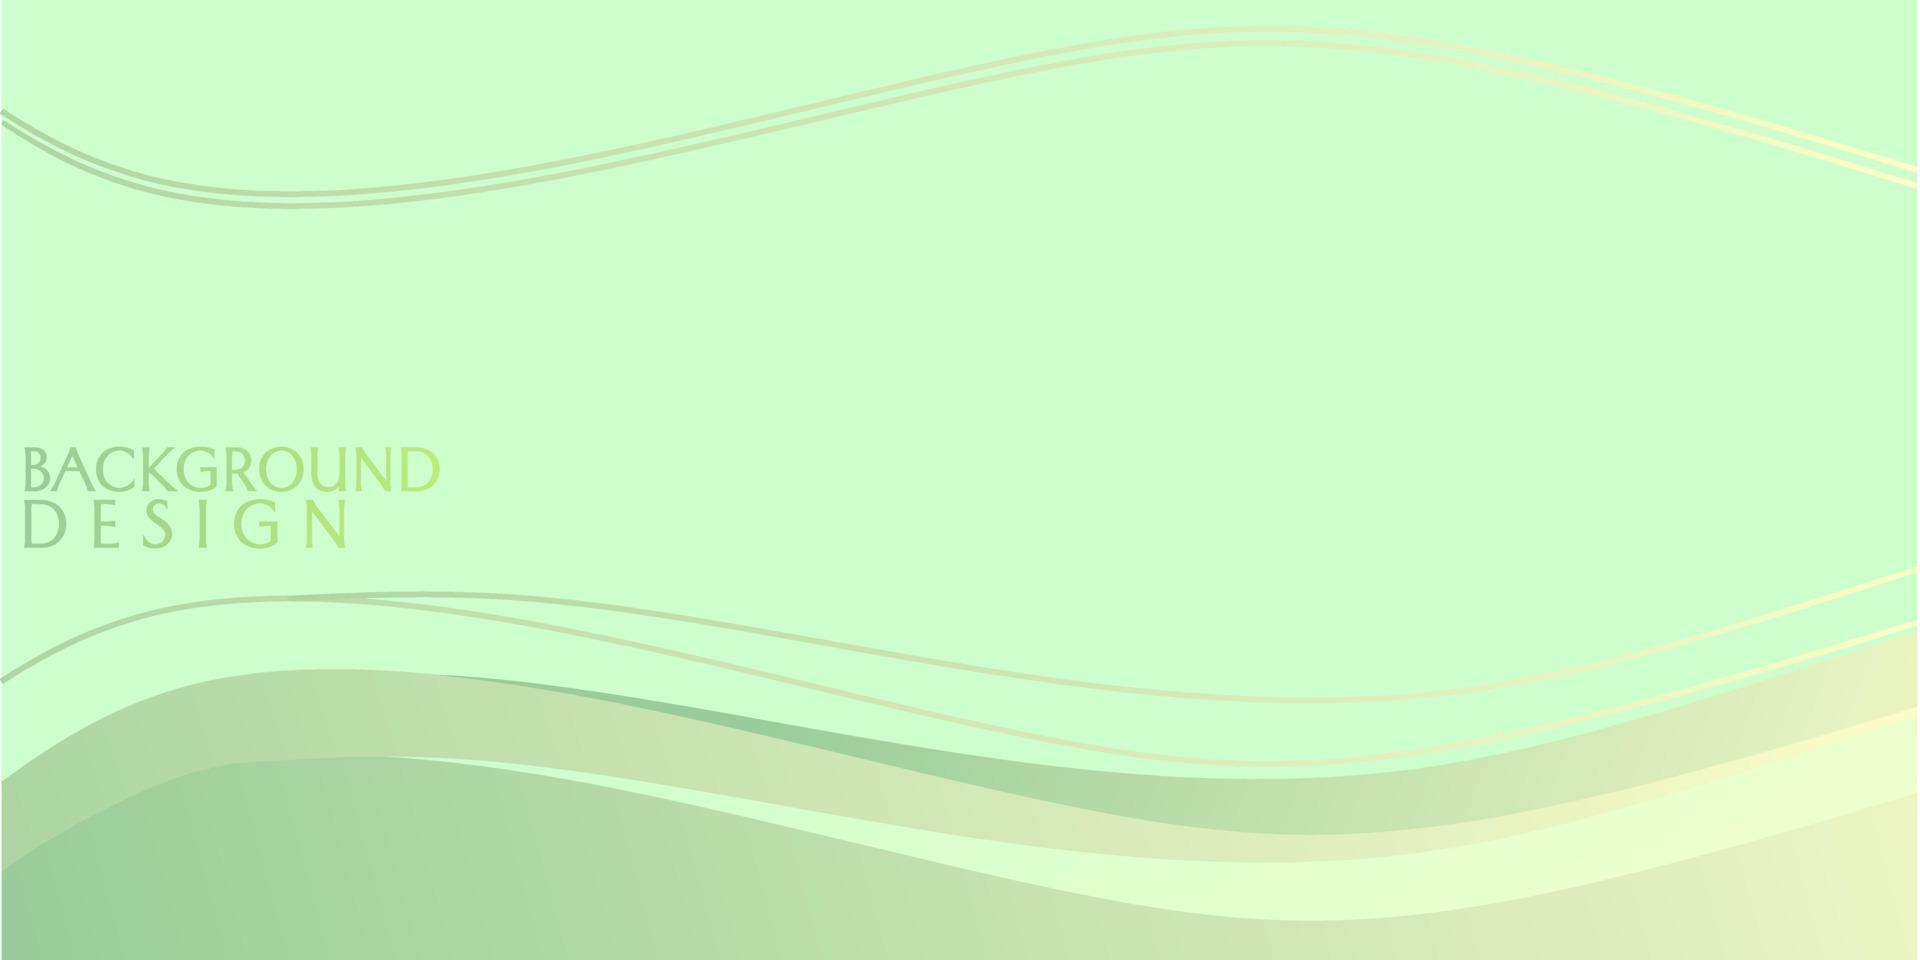 grön abstrakt bakgrund med släta mönster och flödande linjer. design för webbplatser, målsidor, vektor